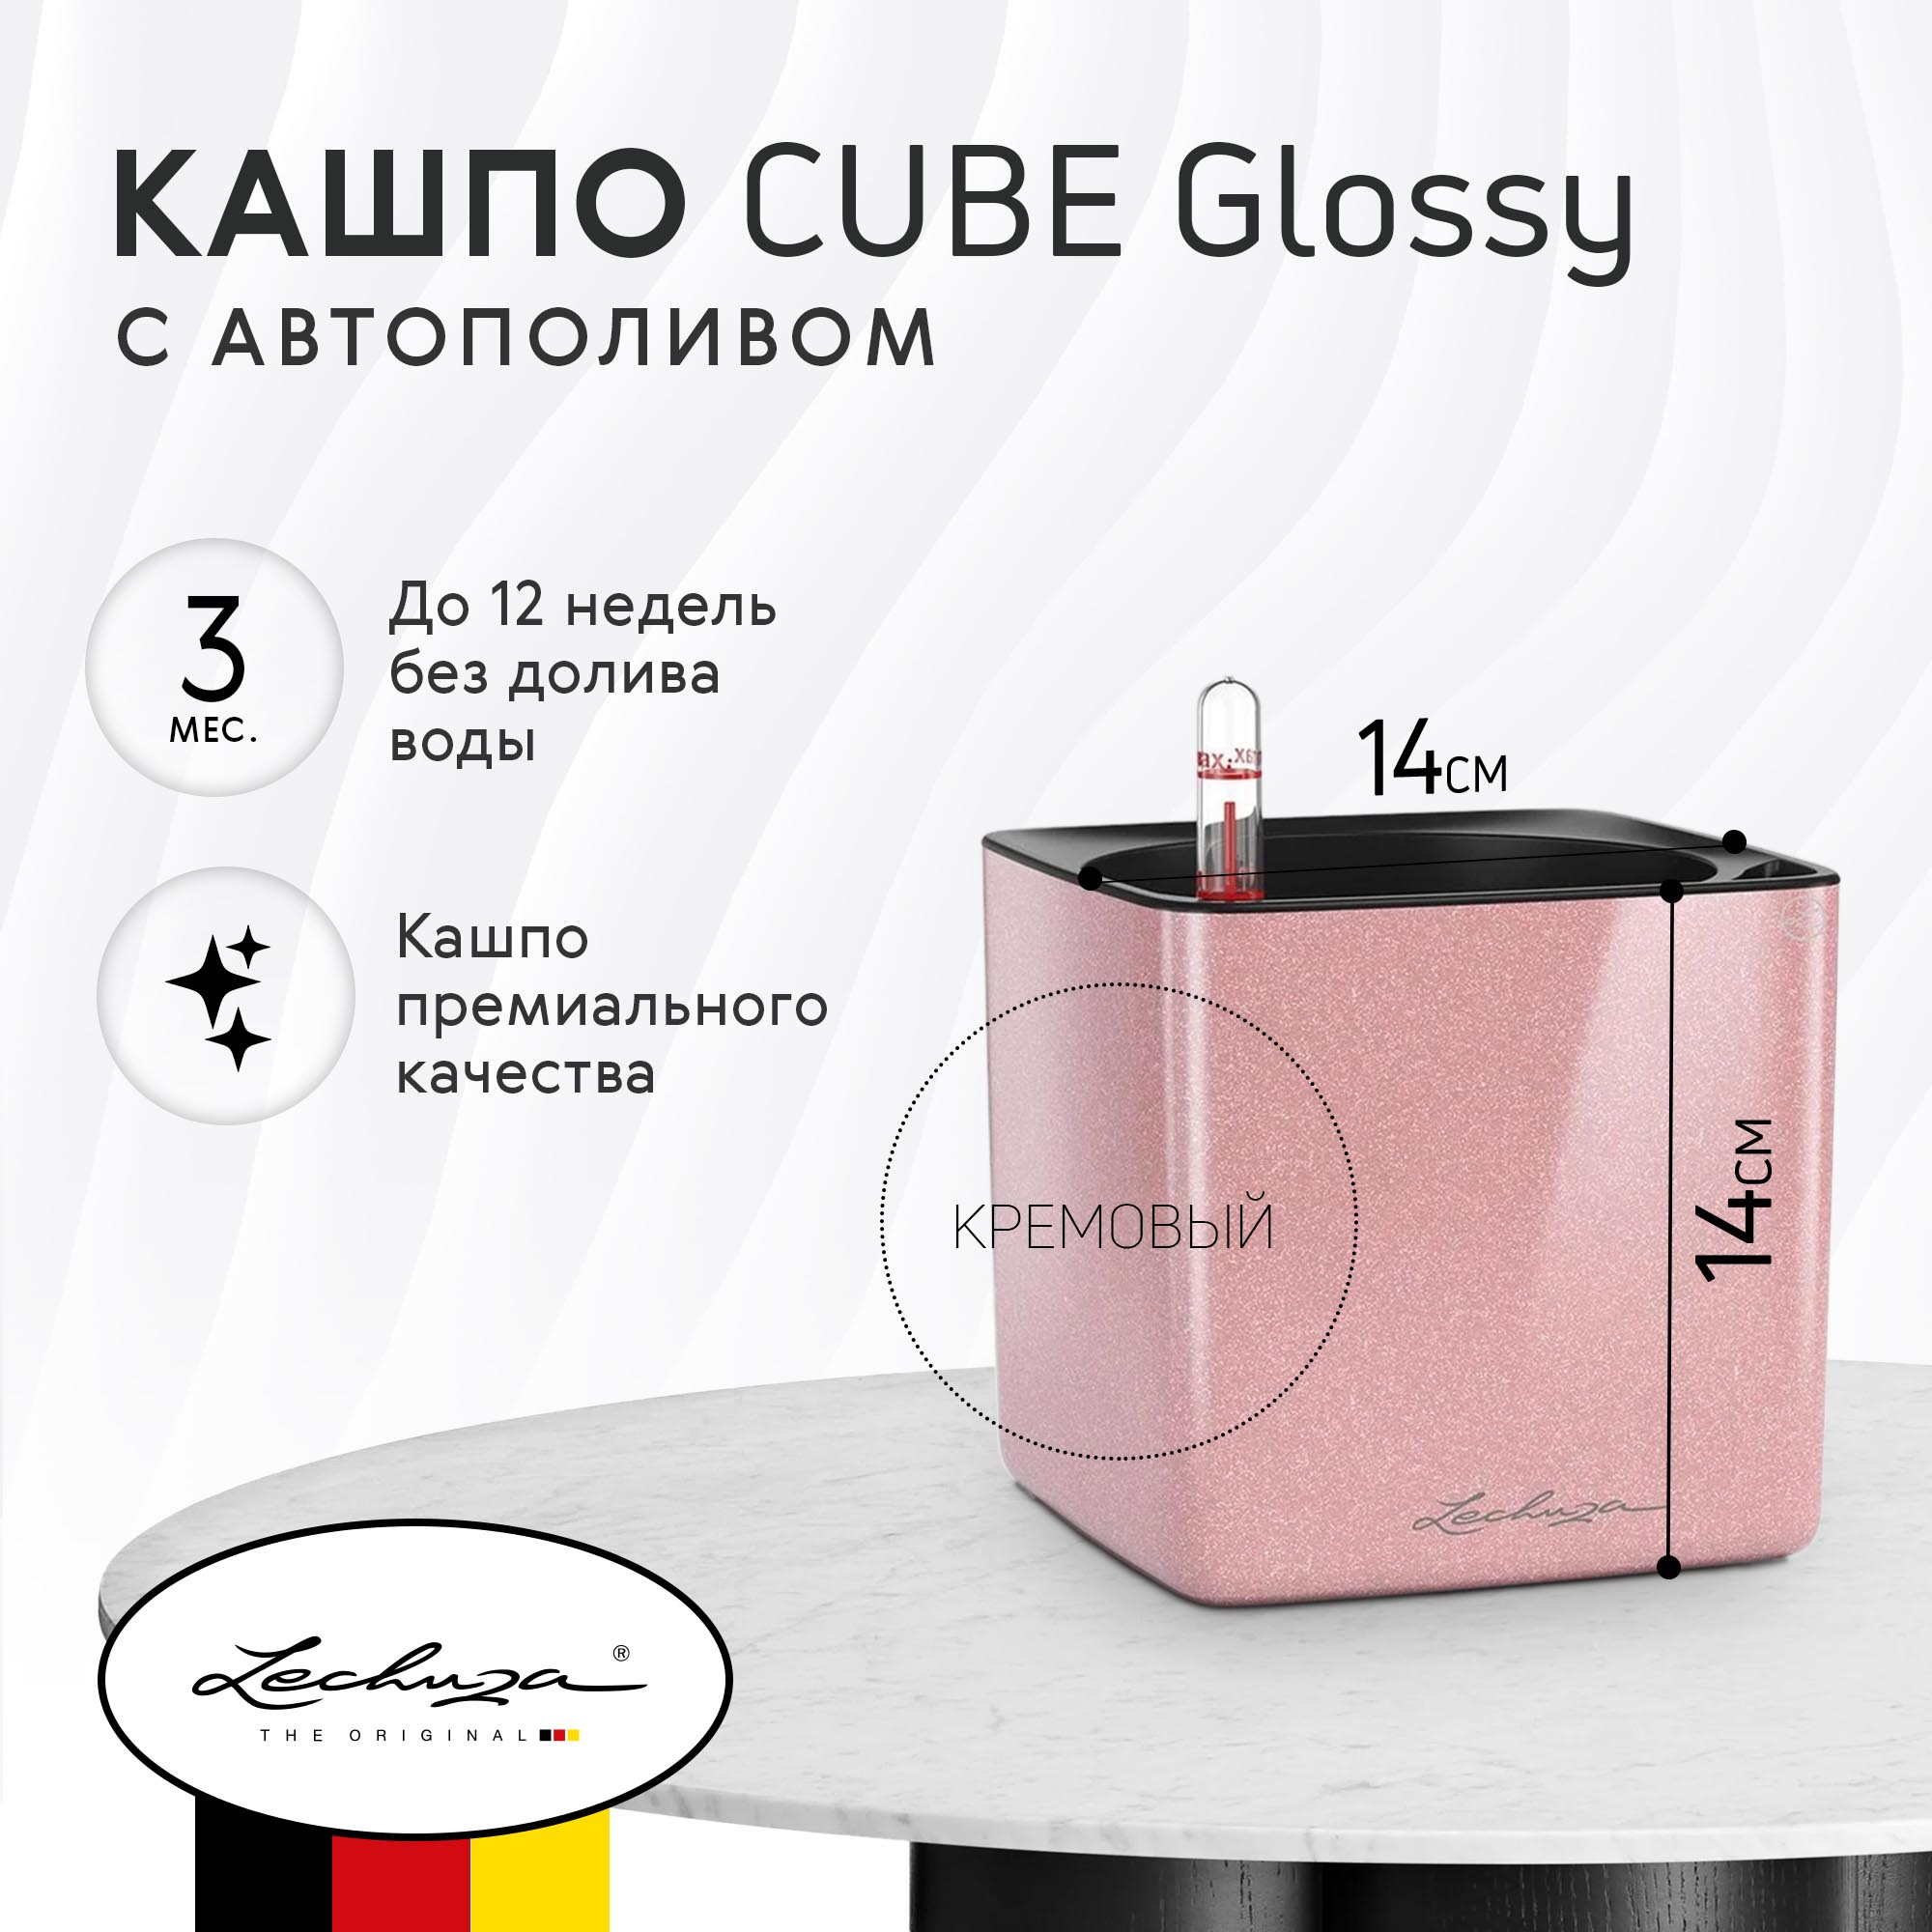 Кашпо Lechuza cube glossy 14x14  с автополивом, цвет розовый - фото 2